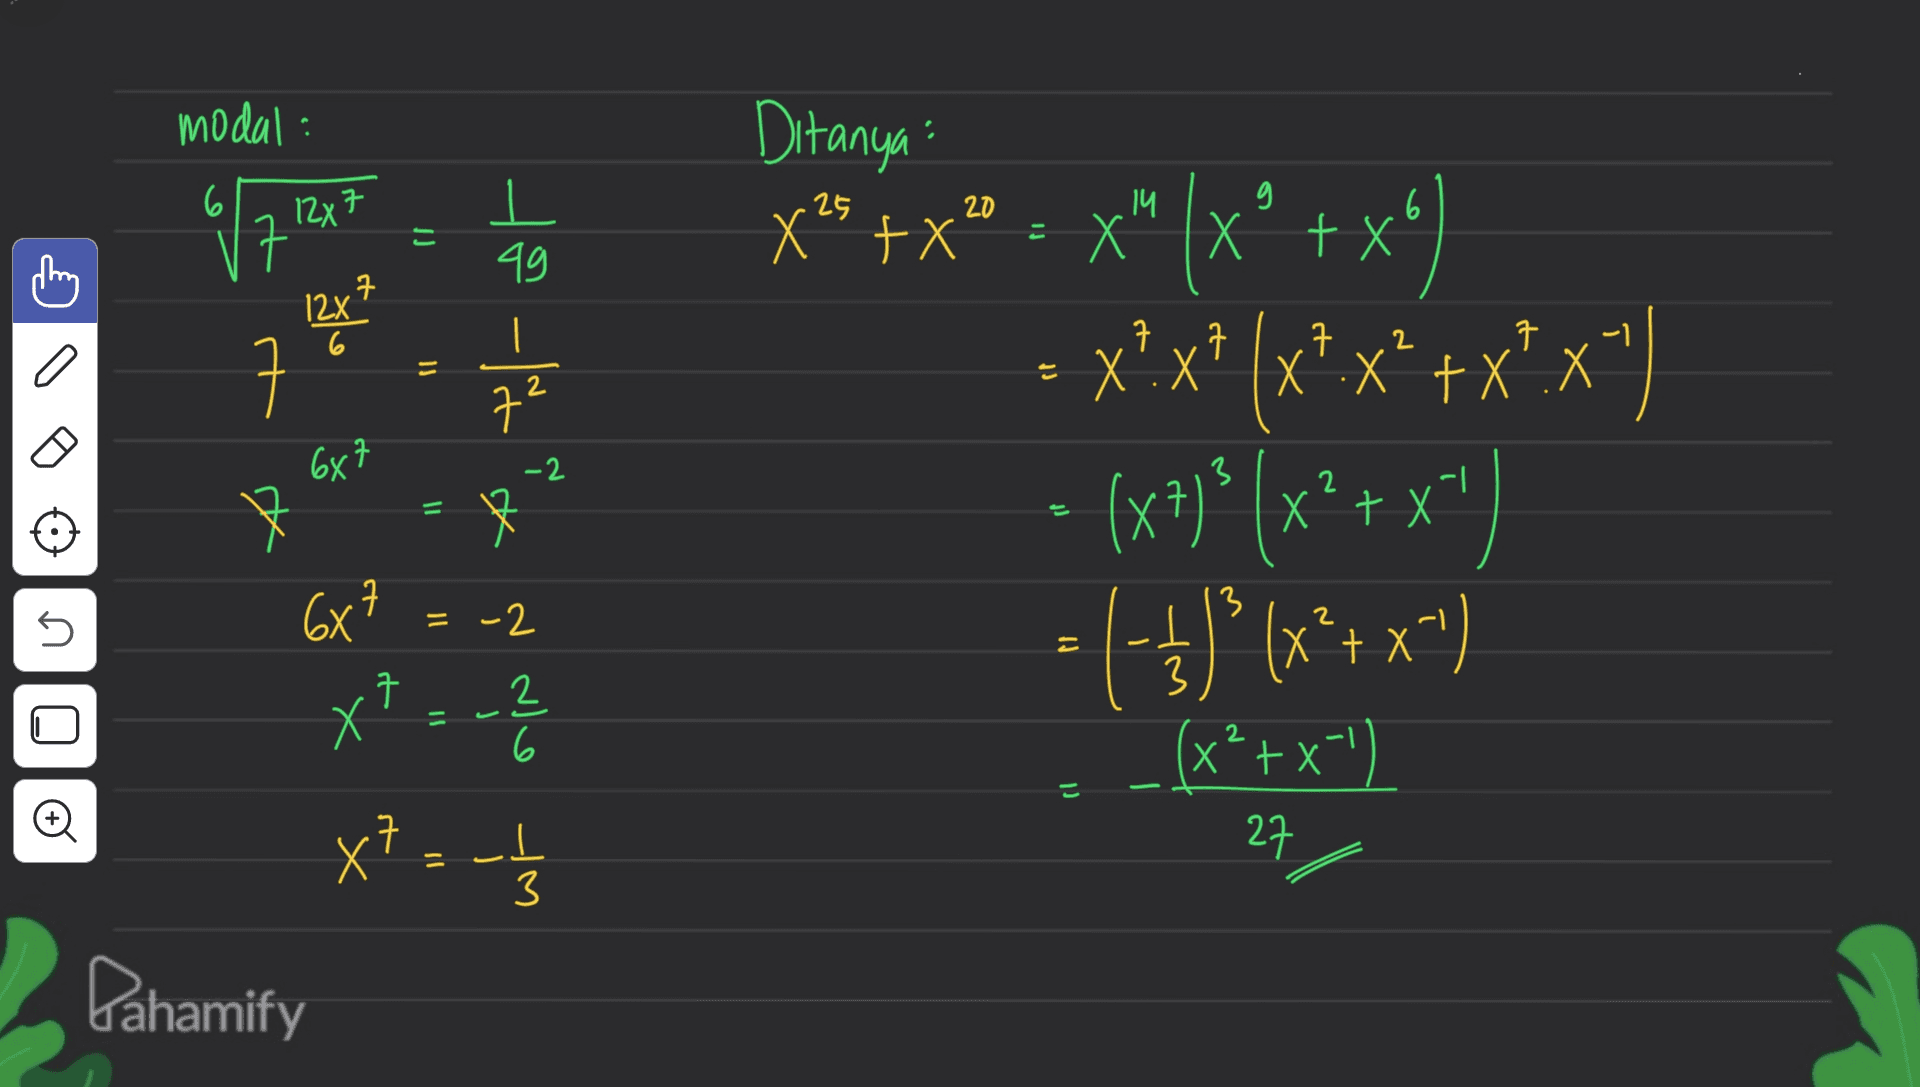 modal: 6 12x7 .25 20 14 6 JJ = X | 一 X 49 it 구 12x 2 7 o ㅋ 7 Х 7 X.X Il 2 7² 687 Ditanya x" +x” • x"(xº + x4) X? +X'. X") - (x+)? (x2+x") x7} x² = ()*(x + x^) (++ ^ - (x²+x-') -2 = f = X 7 -2 3 5 2 千 2 6 2 + (1 1) Đ 68 X = -2 Х x? :- Pahamify 구 _L 3 27 